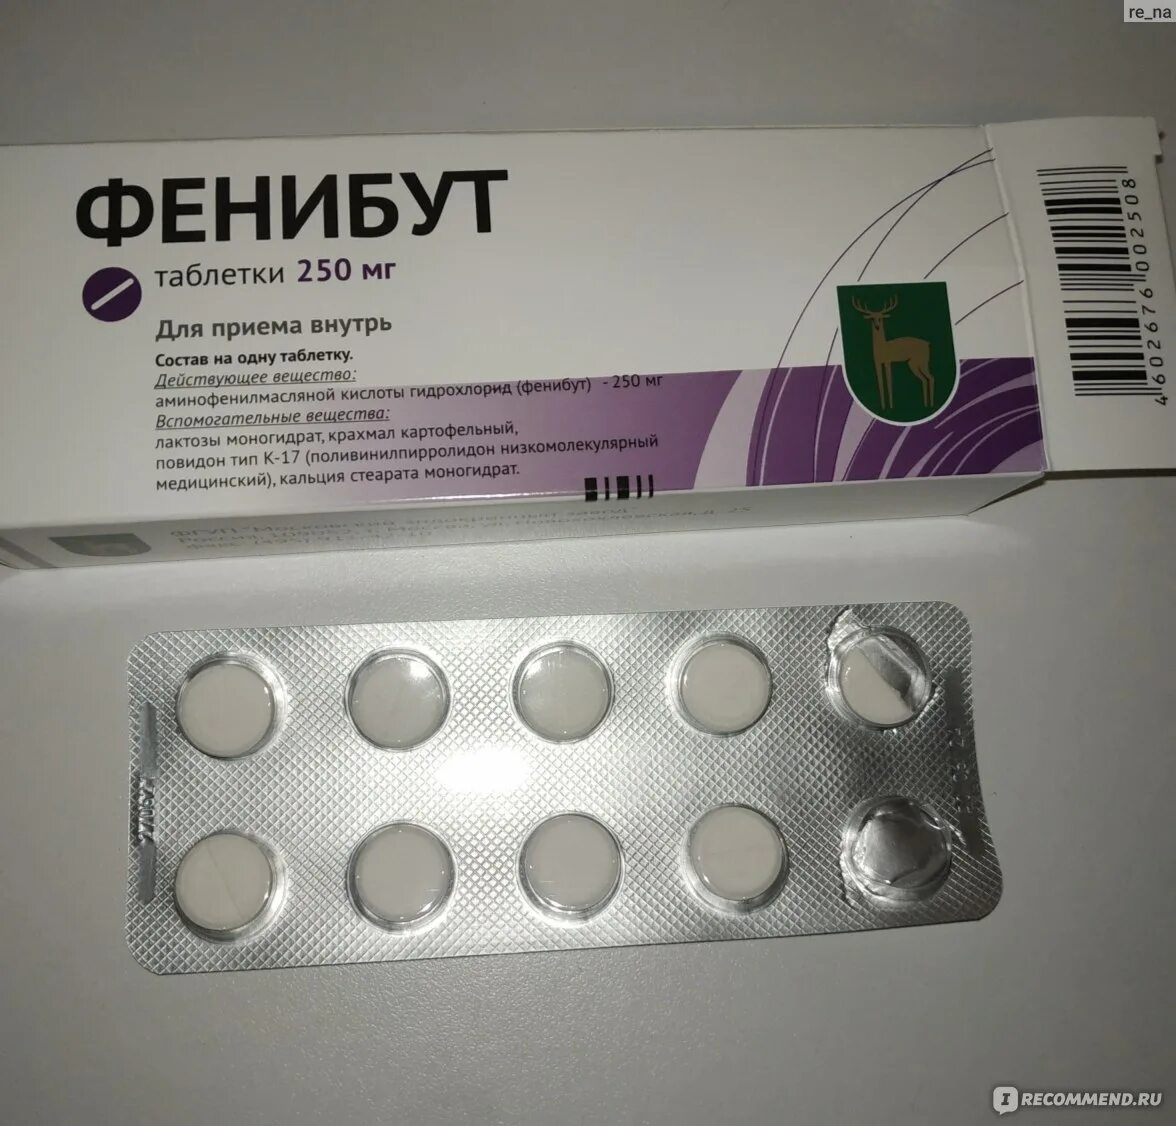 Фенибут 250 производитель Латвия. Фенибут таблетки 250 мг Латвия. Фенибут 250 мг Московский эндокринный завод. Фенибут блистер.